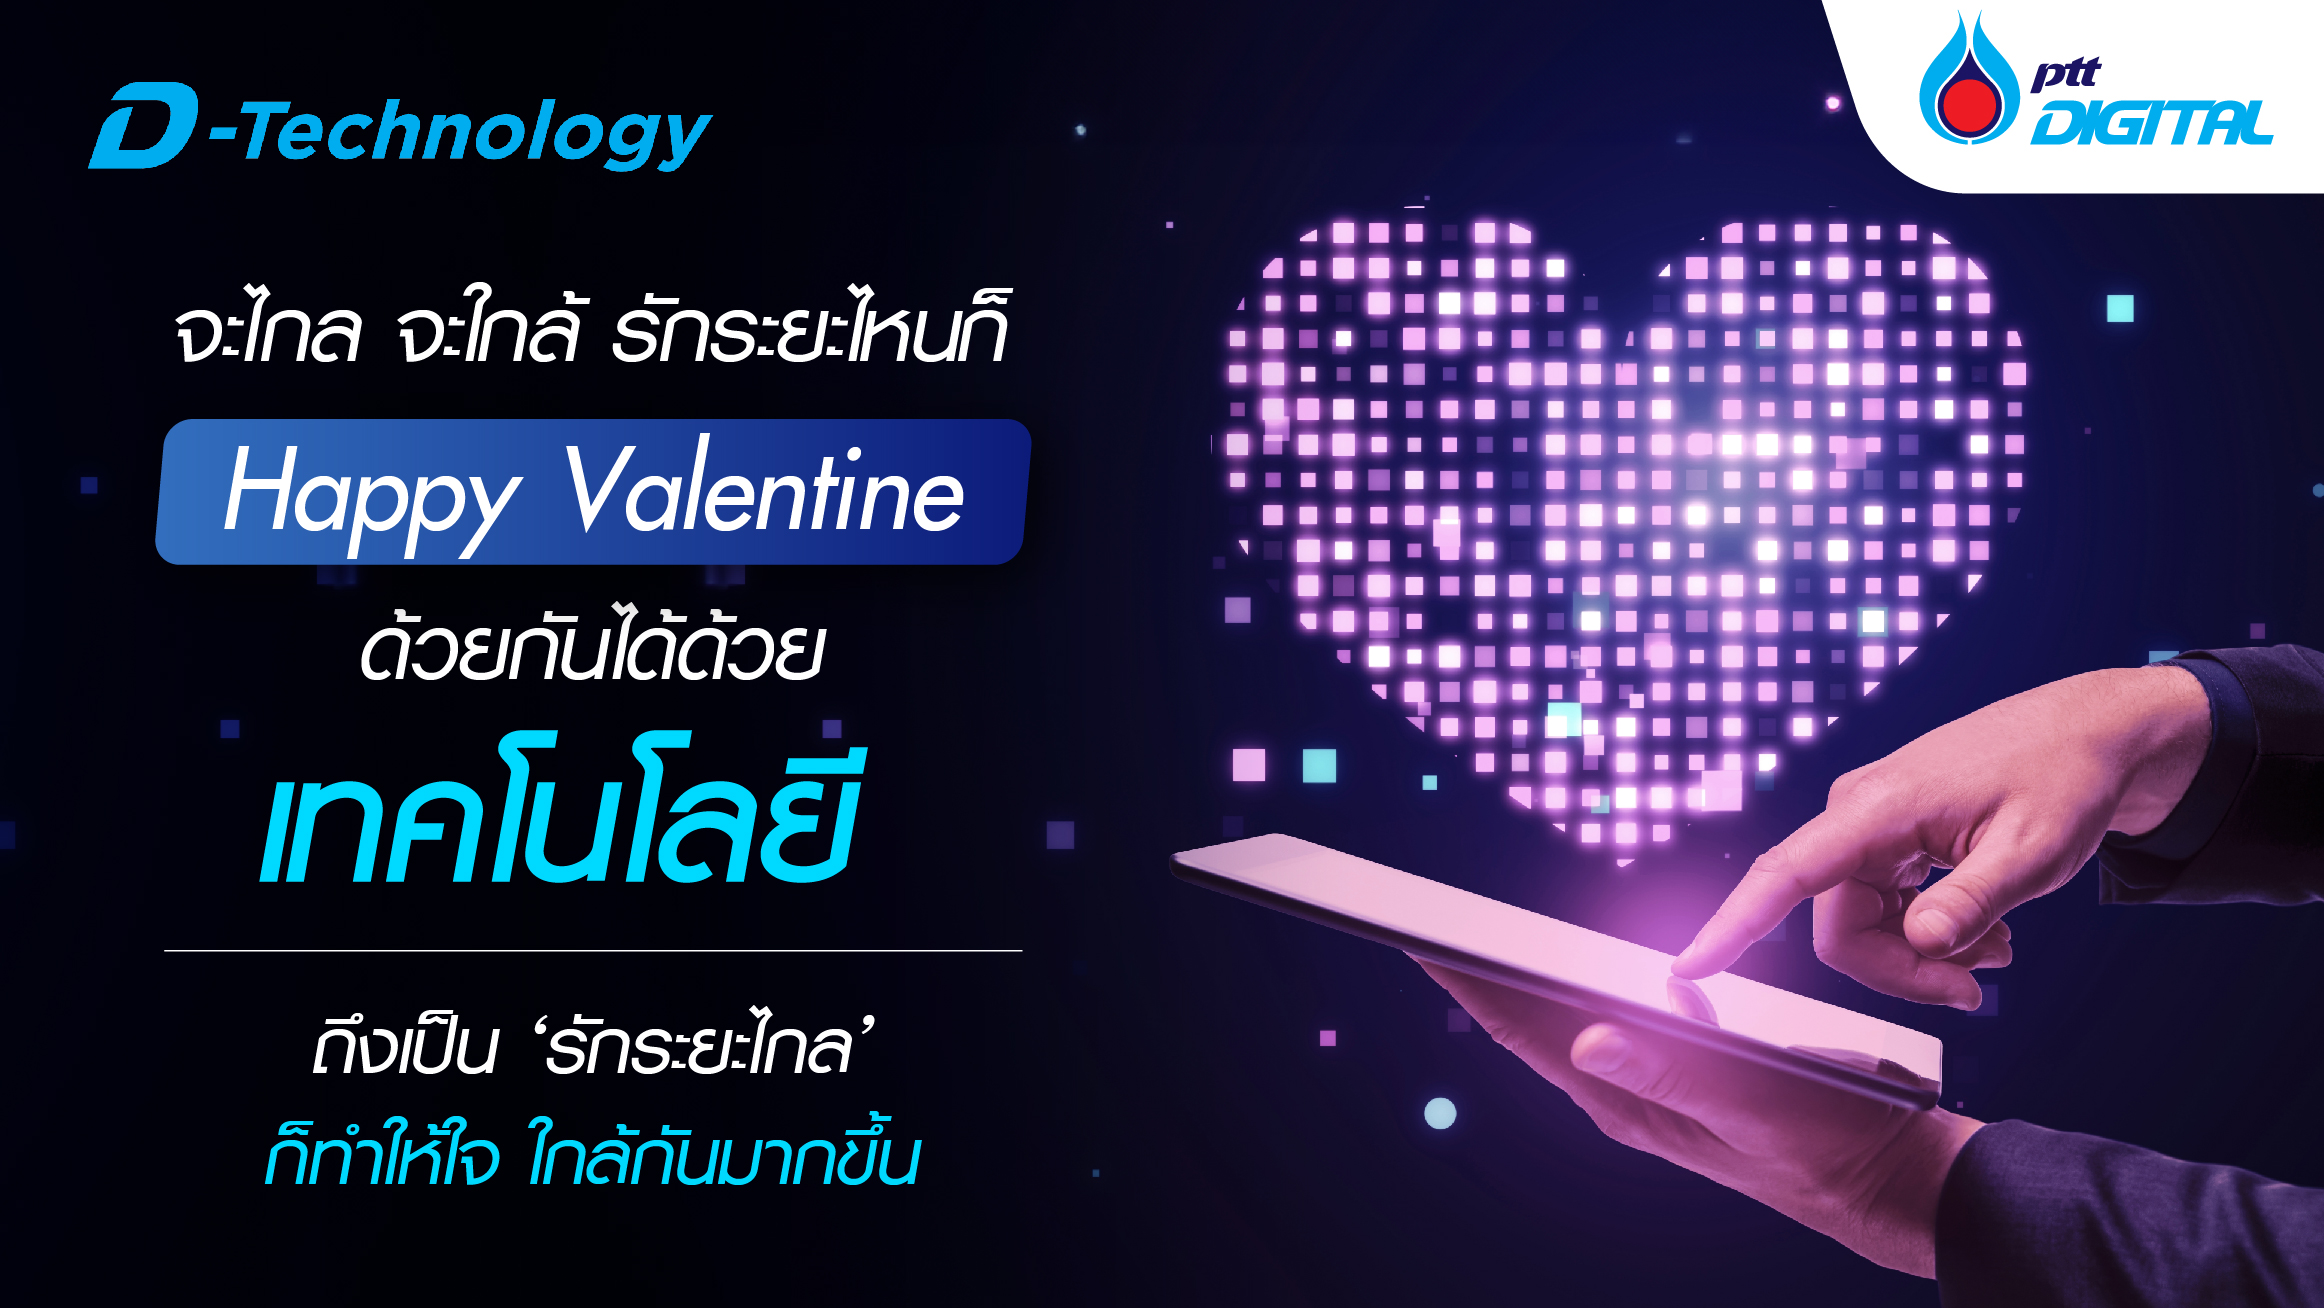 จะไกล จะใกล้ รักระยะไหนก็ Happy Valentine ด้วยกันได้ด้วยเทคโนโลยี 